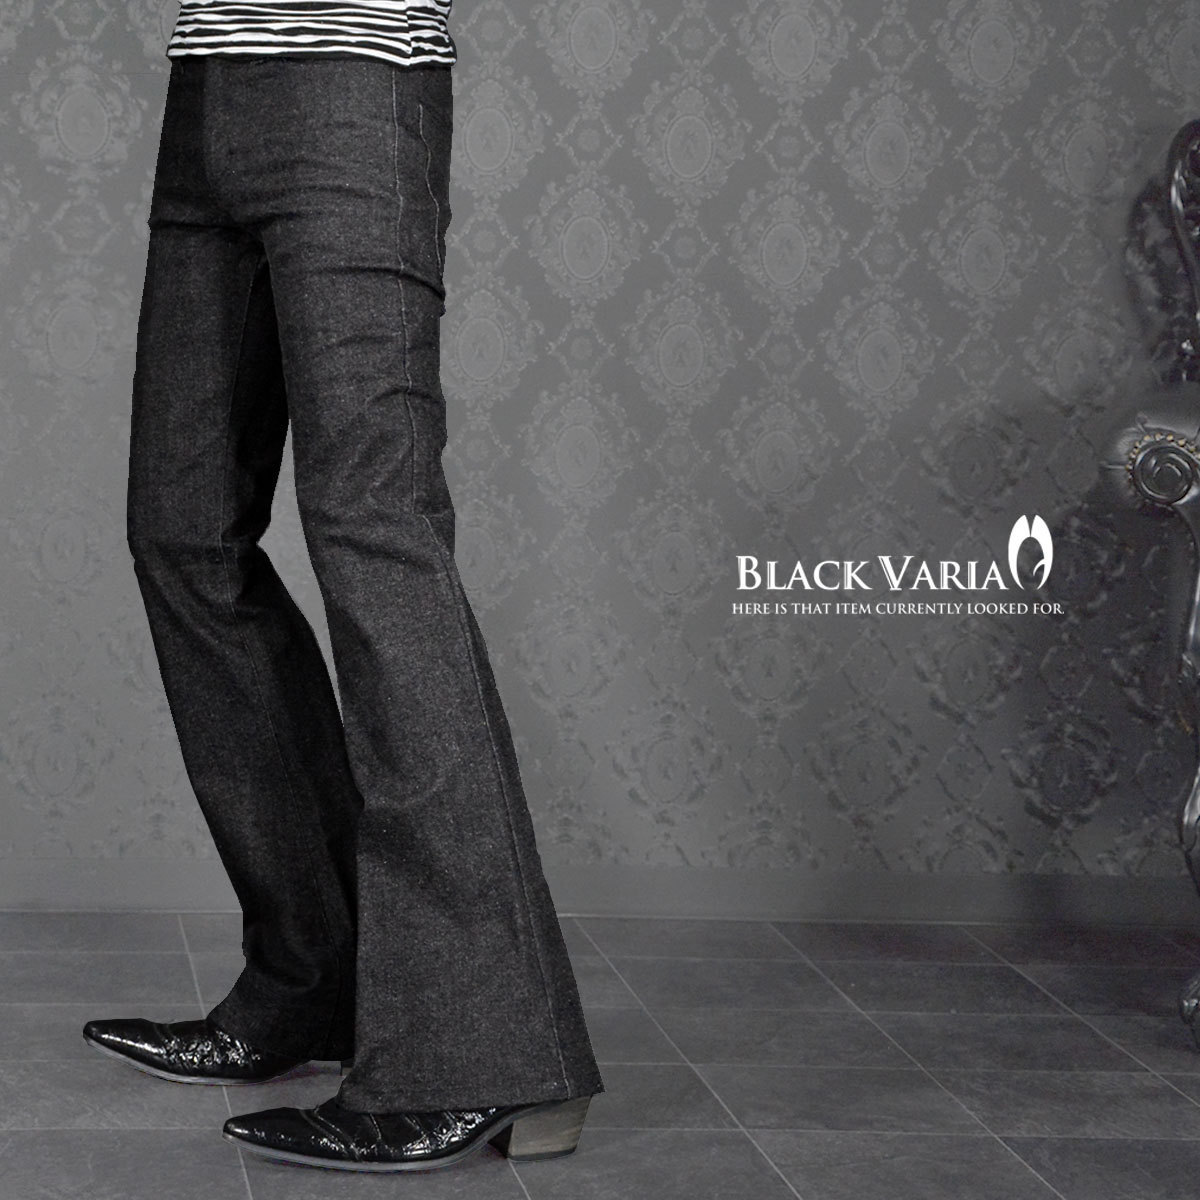 162252-bk BLACK VARIA ベルボトム ブーツカット ジーンズ 裾広 デニム 5ポケット パンツ メンズ (ブラック黒) L31 モード 股上浅め